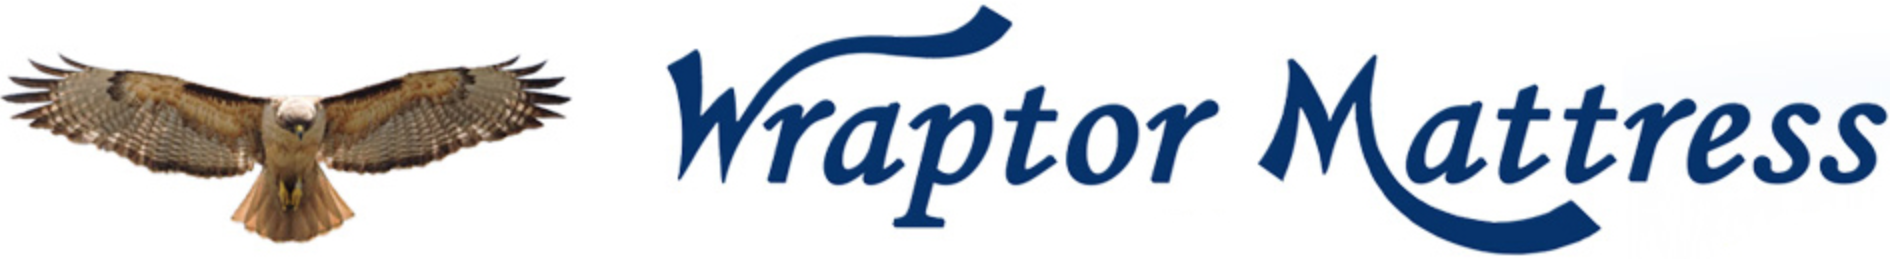 Wraptor Mattress Sticky Logo